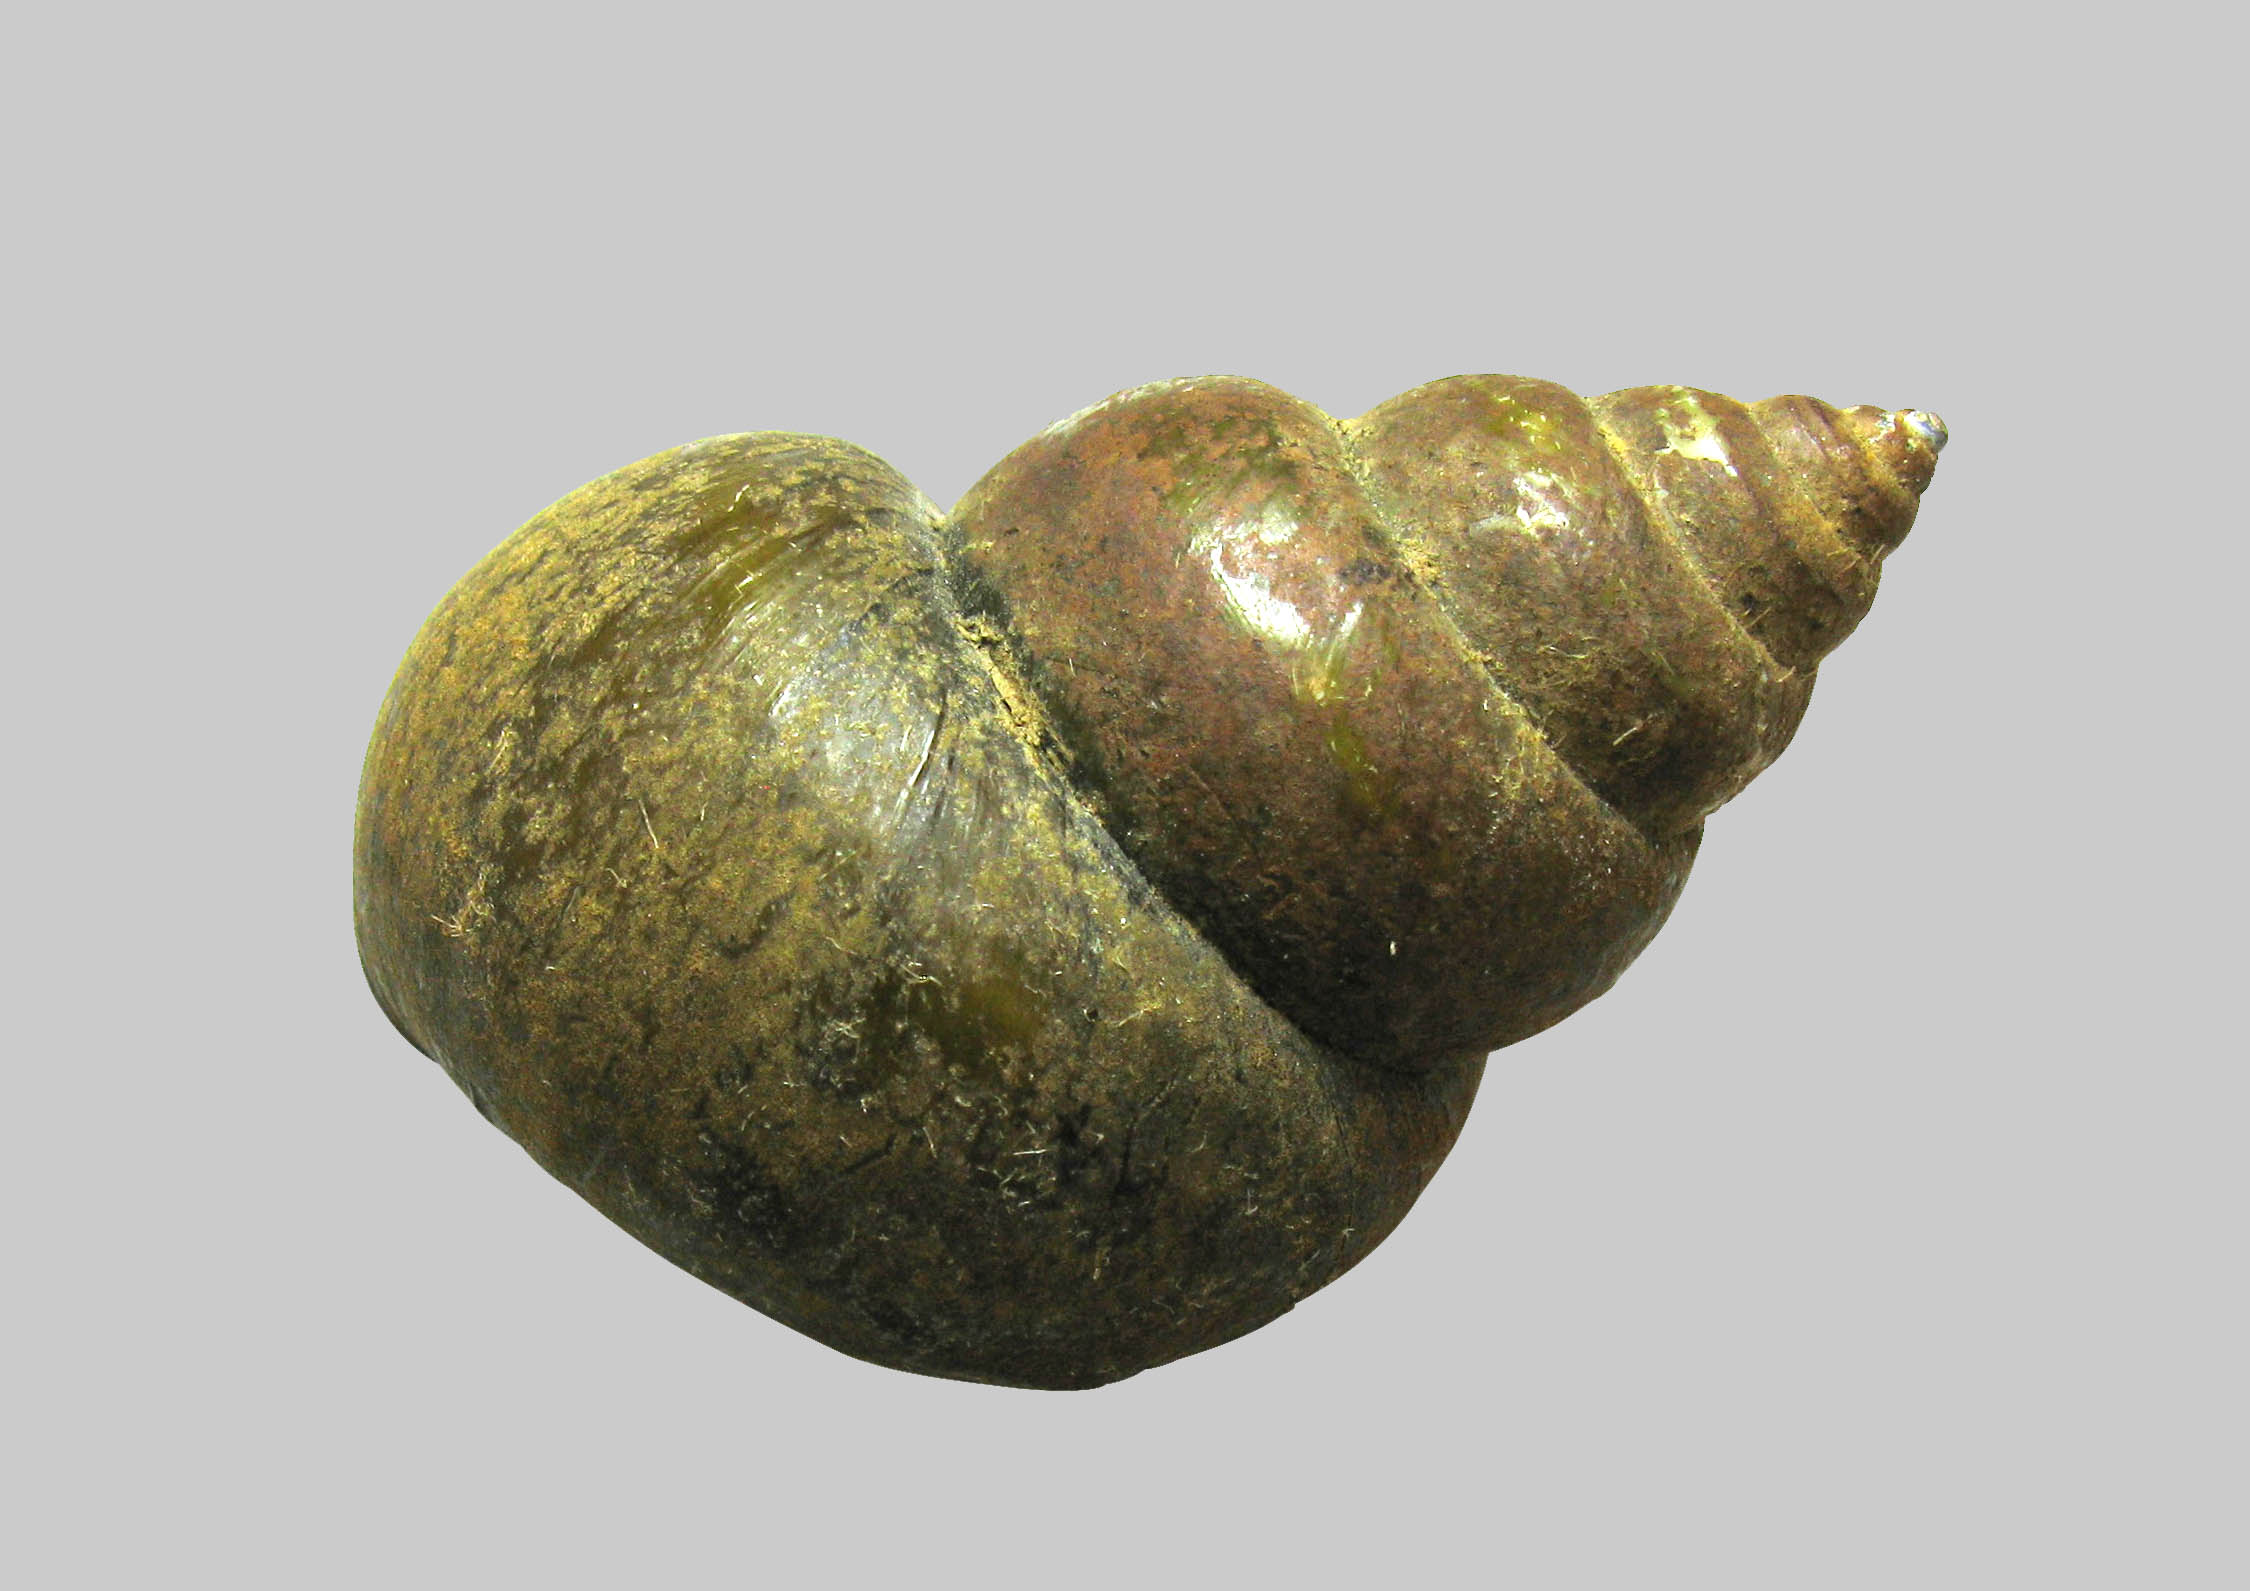 Japanese Mystery Snail (Bellamya japonica)